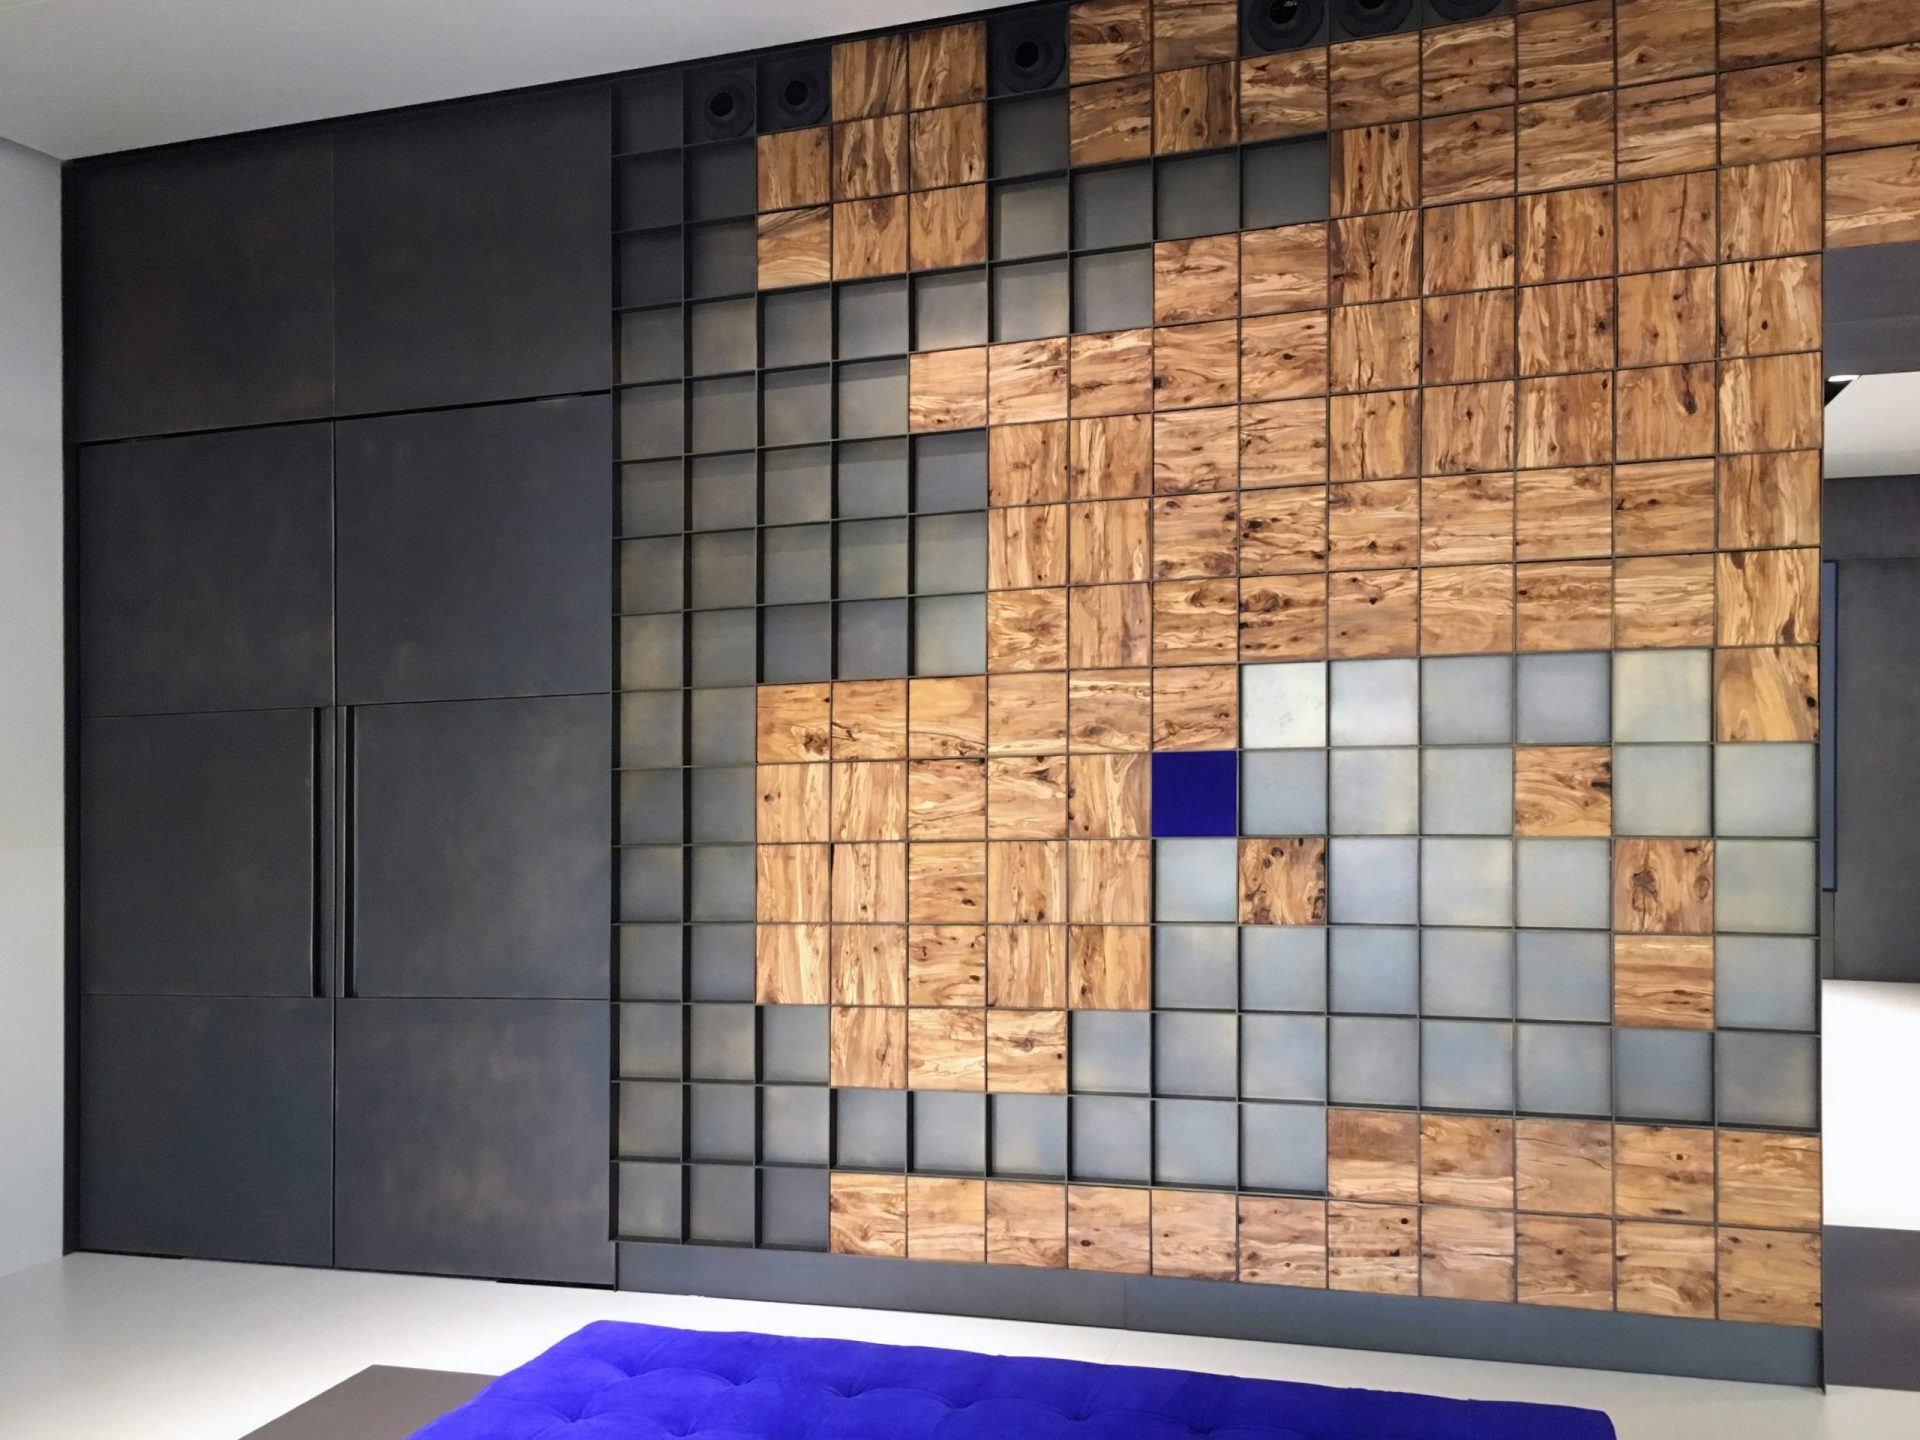 Vestíbul amb paret metàl·lica i mapa del món fet de quadrats de fusta